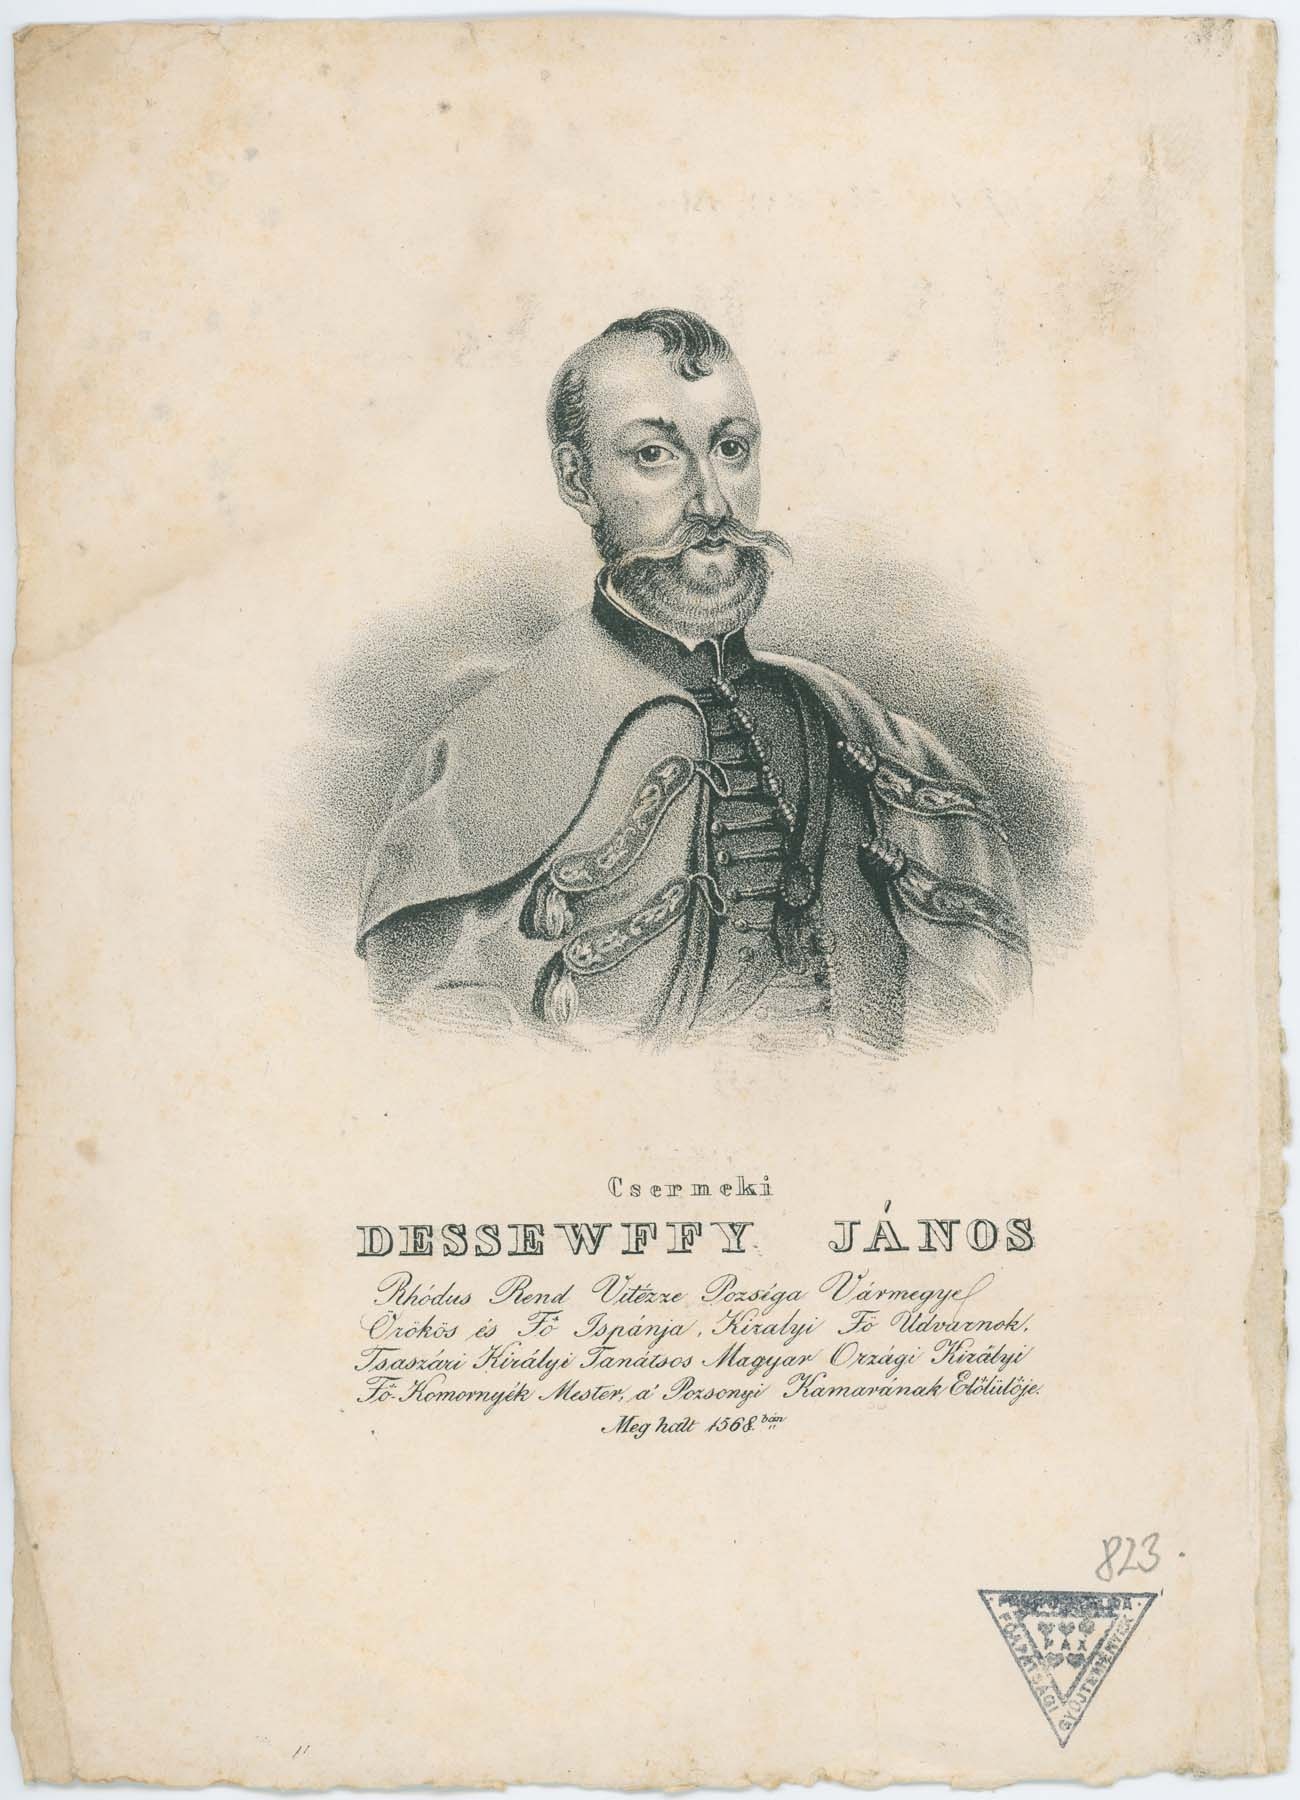 Cserneki Dessewffy János 1500-1568 (Pannonhalma Főapátsági Múzeum CC BY-NC-SA)